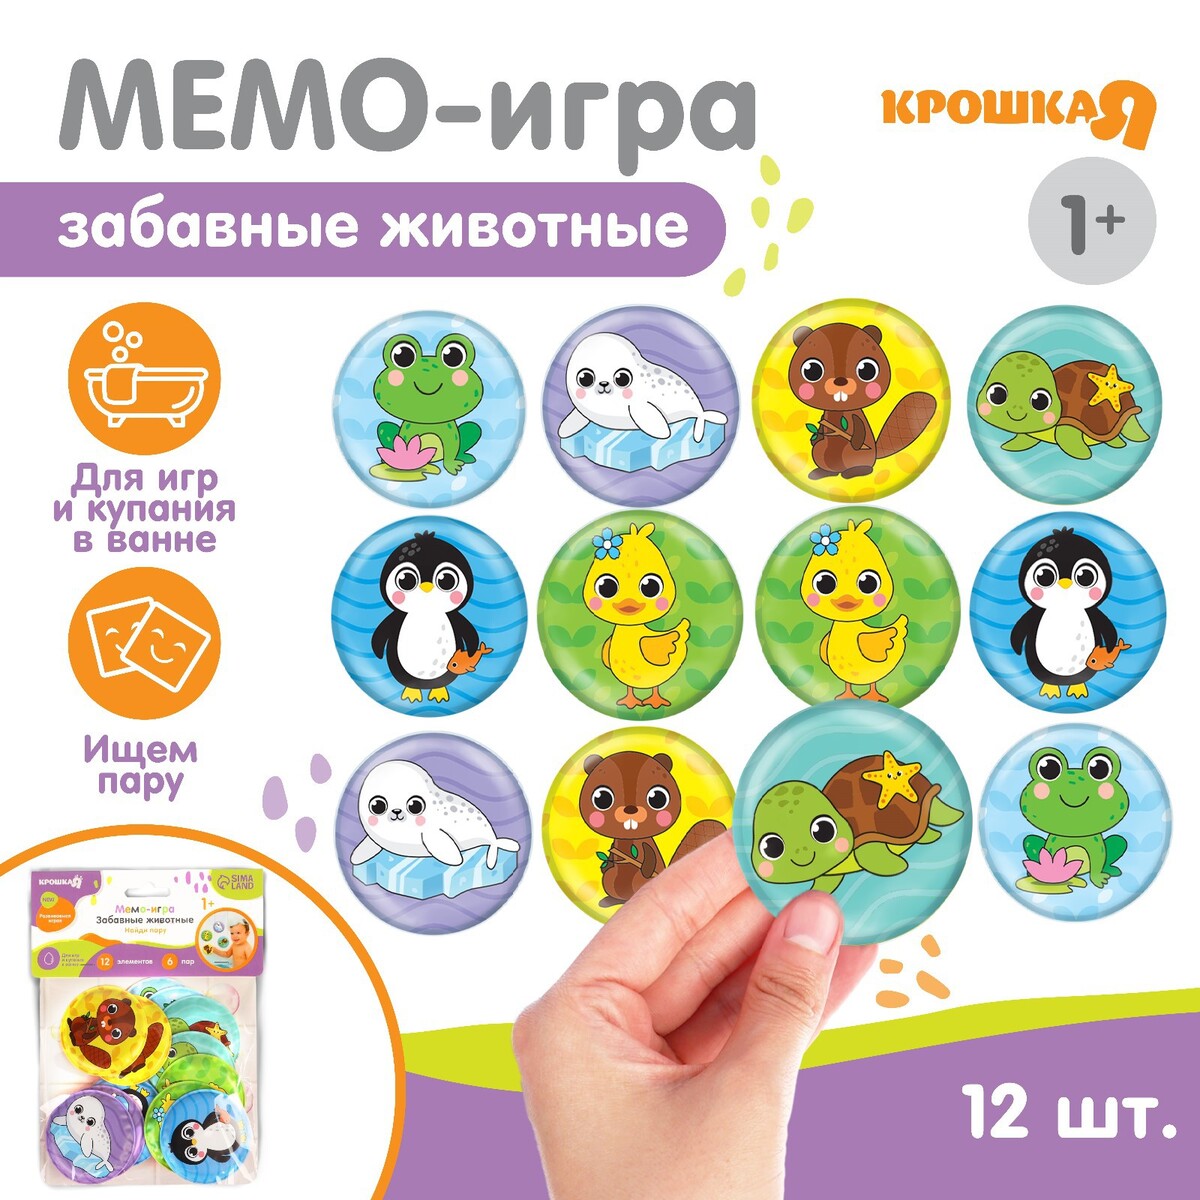 Мемо-игра: развивающие наклейки - присоски многоразовые для игры в ванной свинка пеппа многоразовые наклейки фиолетовая